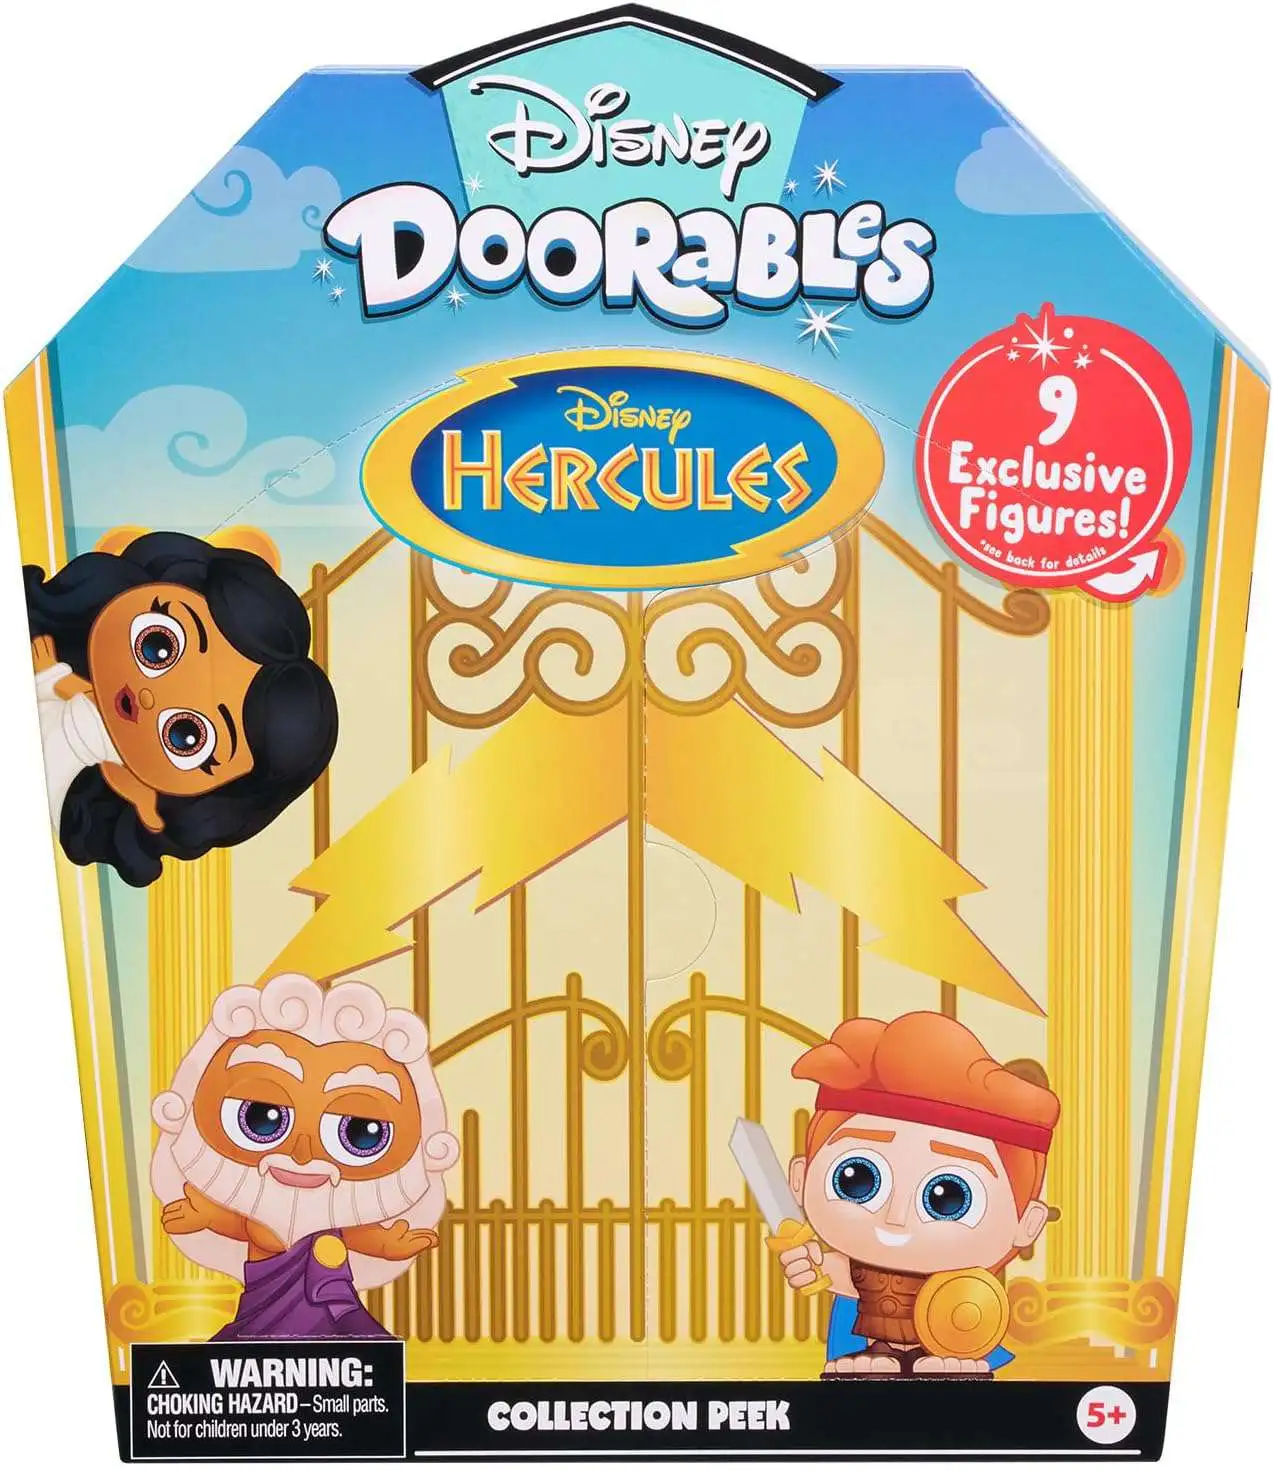  Doorables Disney Series 5 Mini peek - 4 Pack : Toys & Games